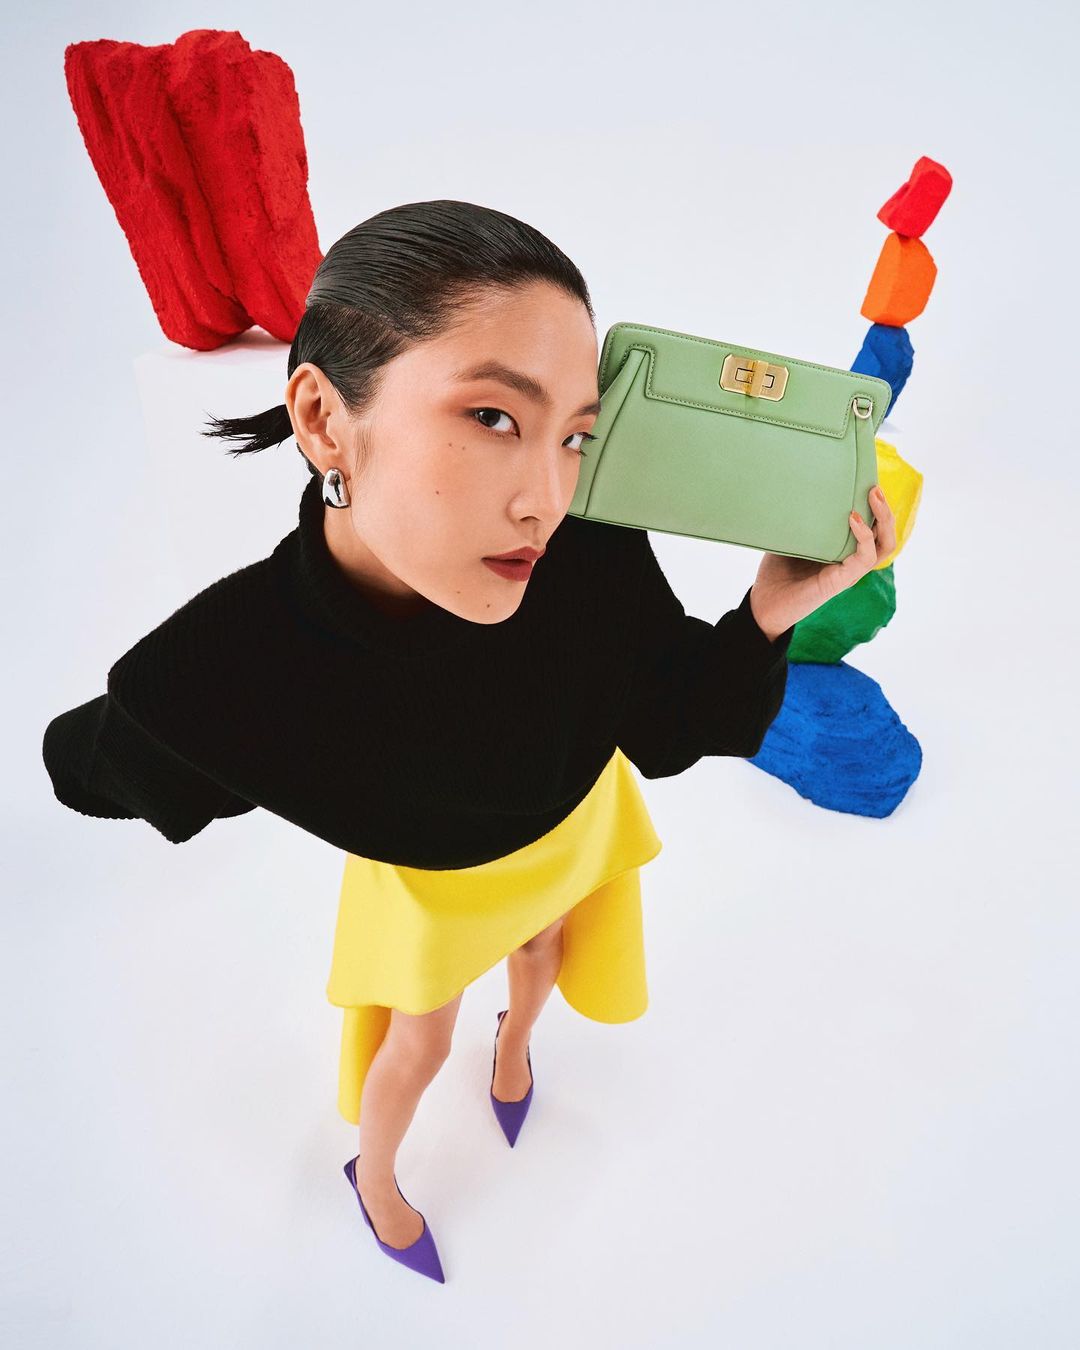 kelly lim singapore basic models malaysia talent fashion female